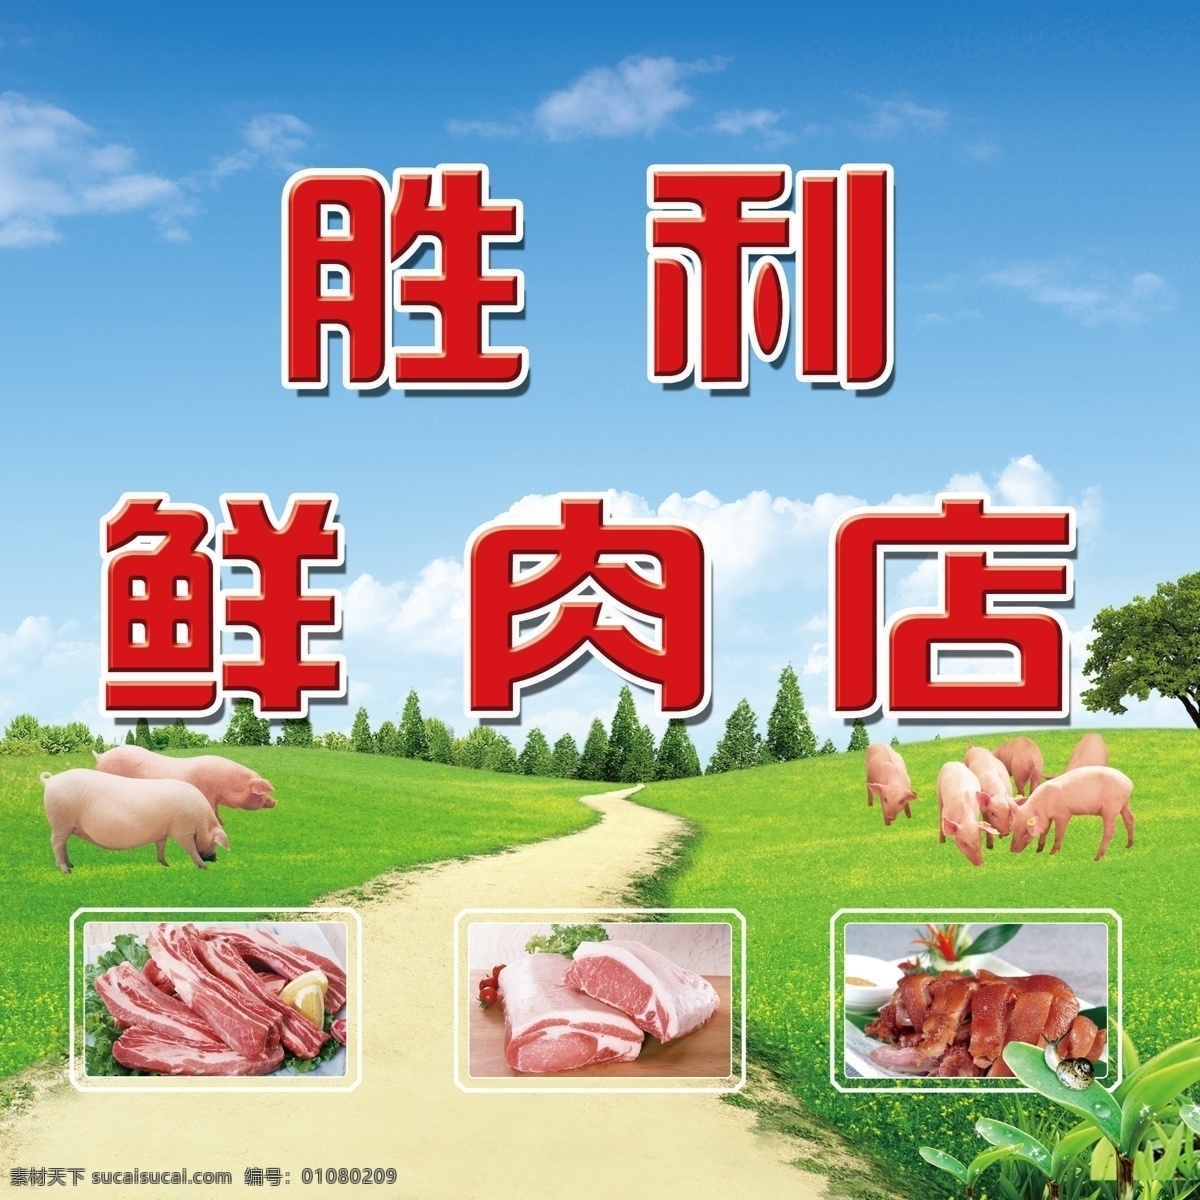 鲜肉店海报 鲜肉 猪肉 猪 白猪 蓝天 白云 草地 森林 猪肉块 肘子 广告设计模板 源文件